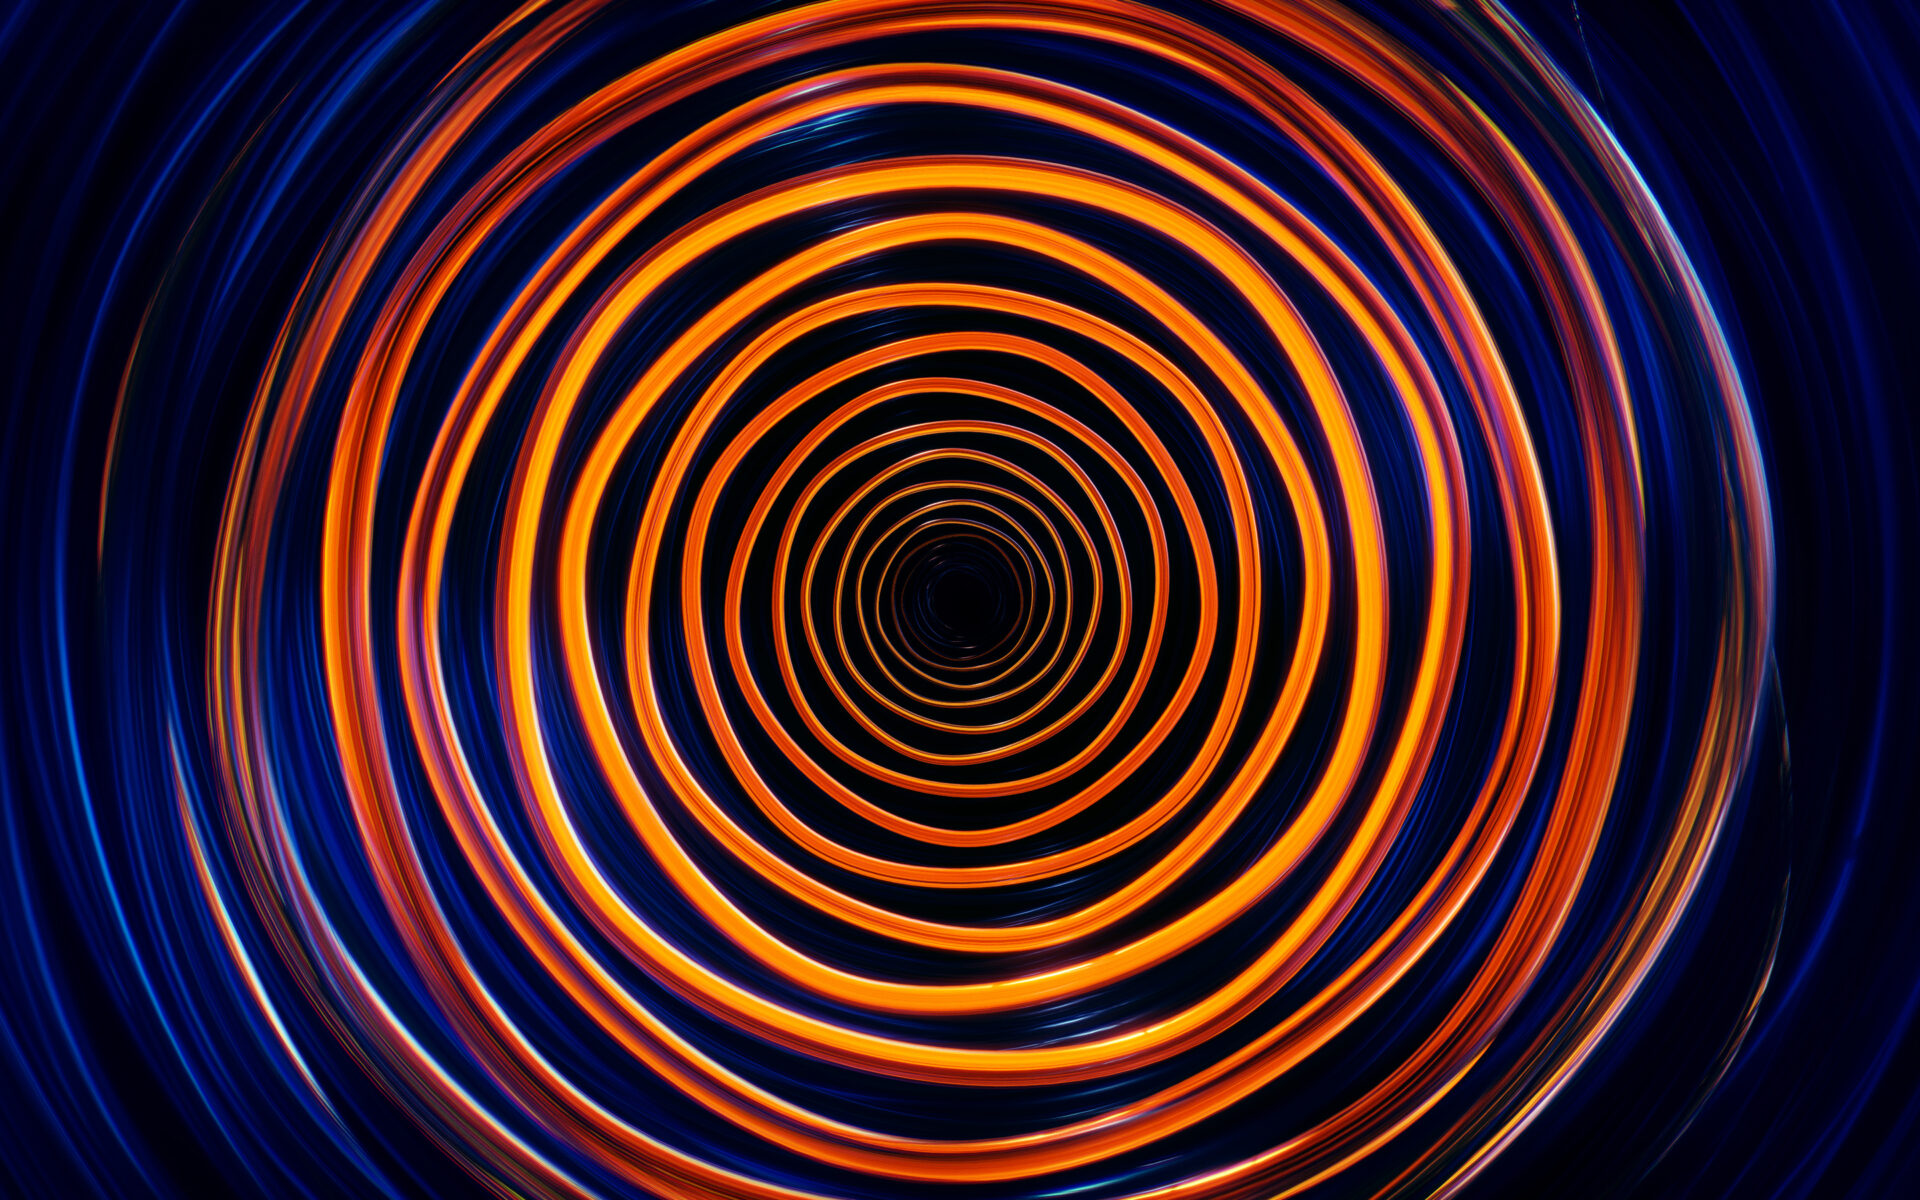 Spiral Waves 4K494957063 - Spiral Waves 4K - Waves, Turquoise, Spiral